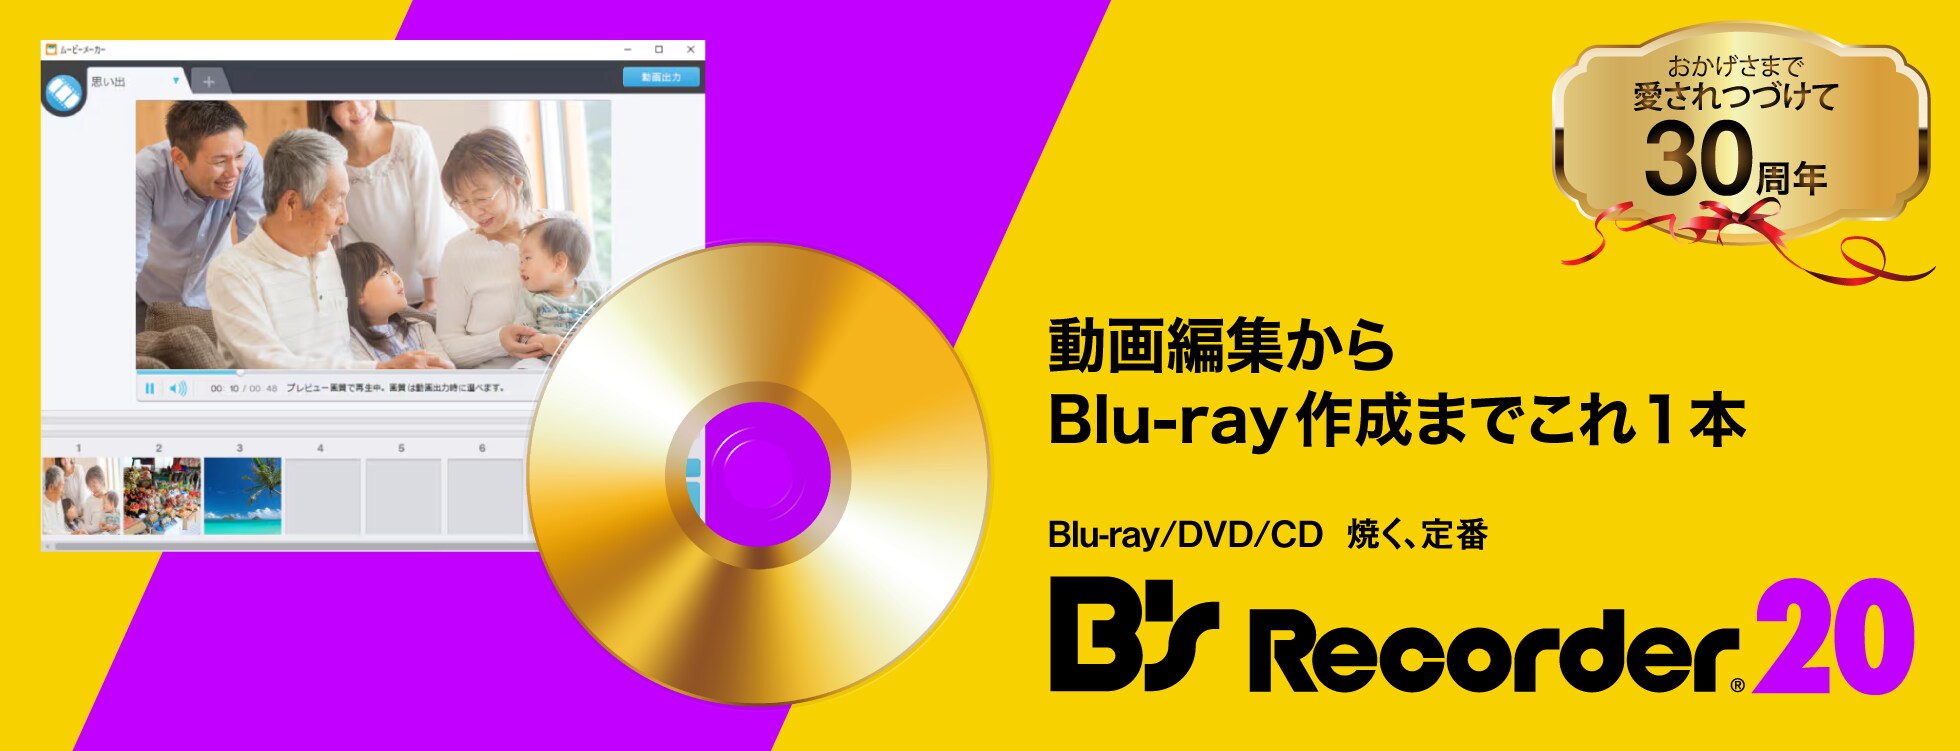 B's Recorder 20 - DVD書き込み/ディスク作成ソフト